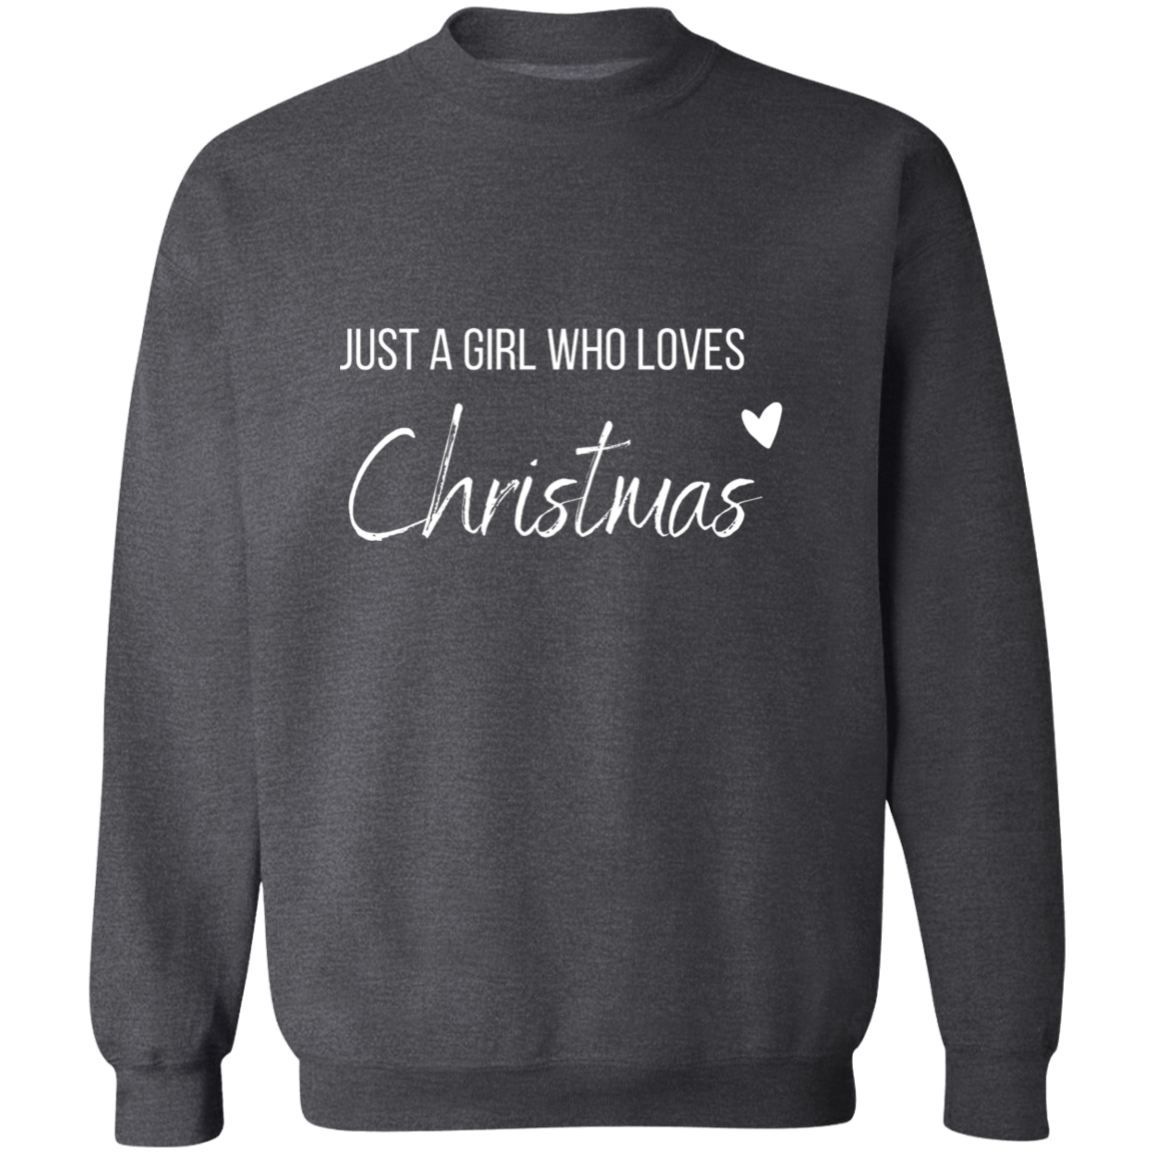 Girl Who Loves Christmas Crewneck Pullover Sweatshirt Birthday, Christmas Gift